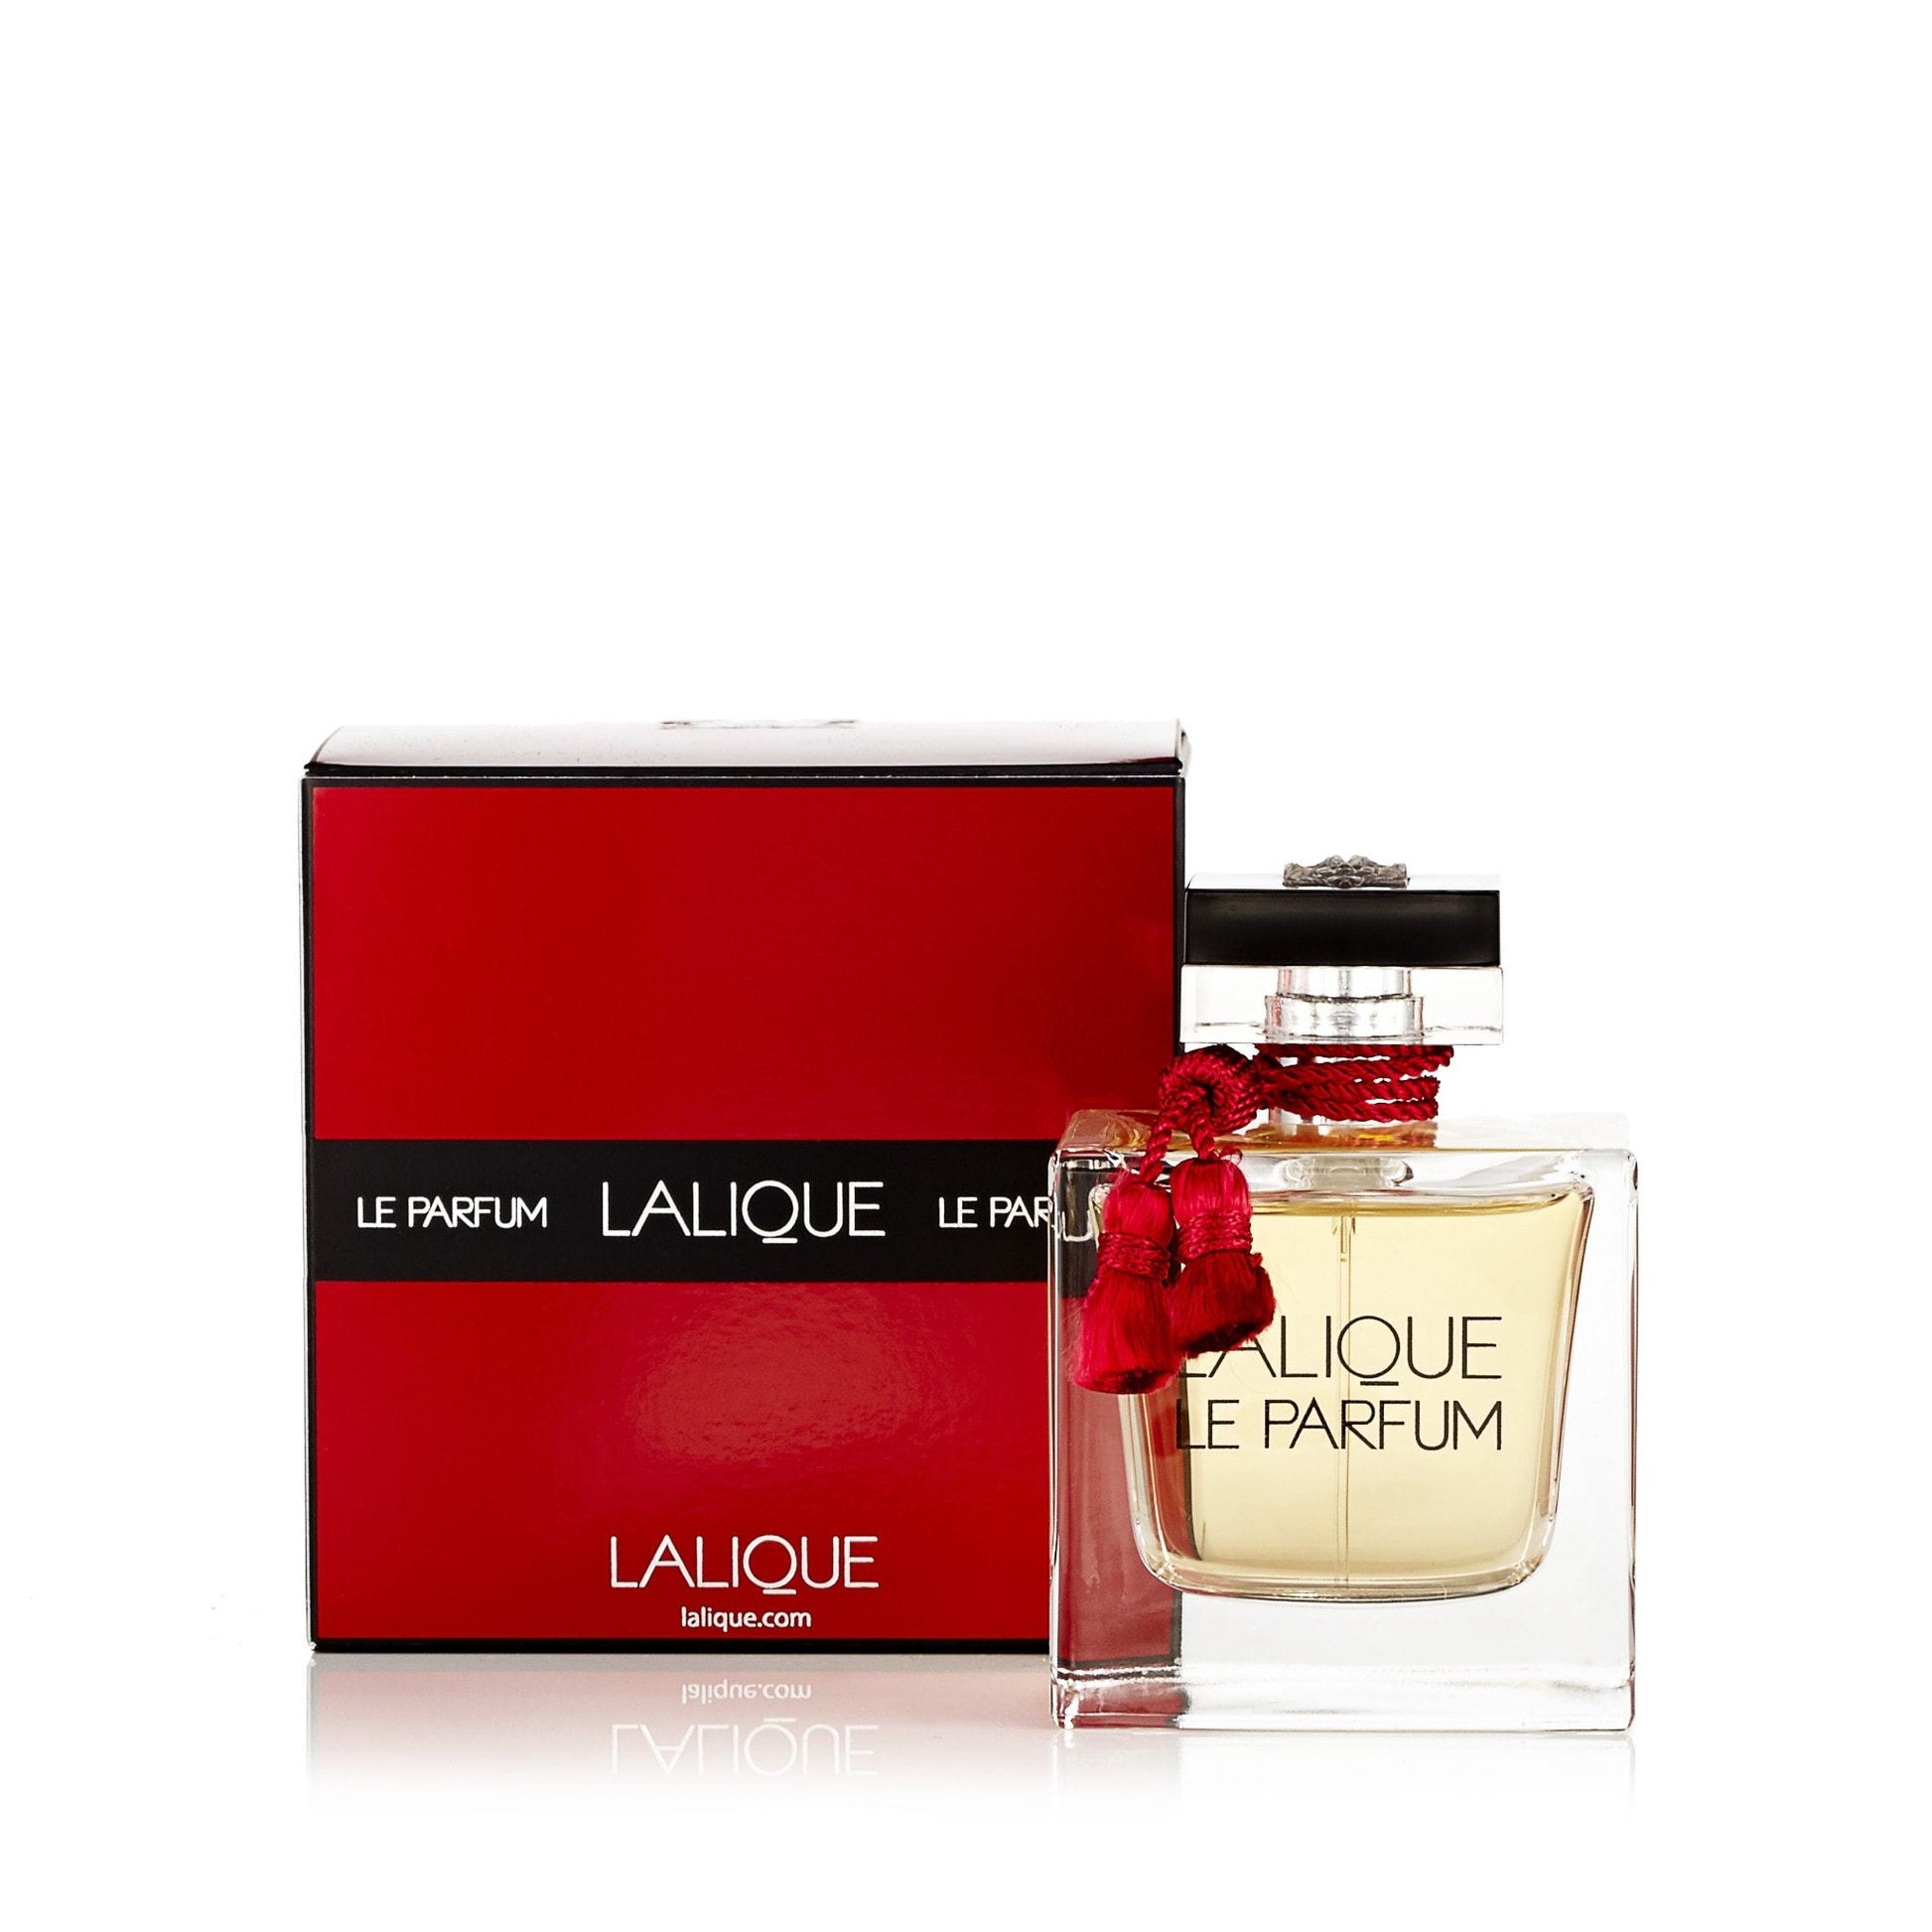 La Parfum Eau de Parfum Spray for Women by Lalique, Product image 2